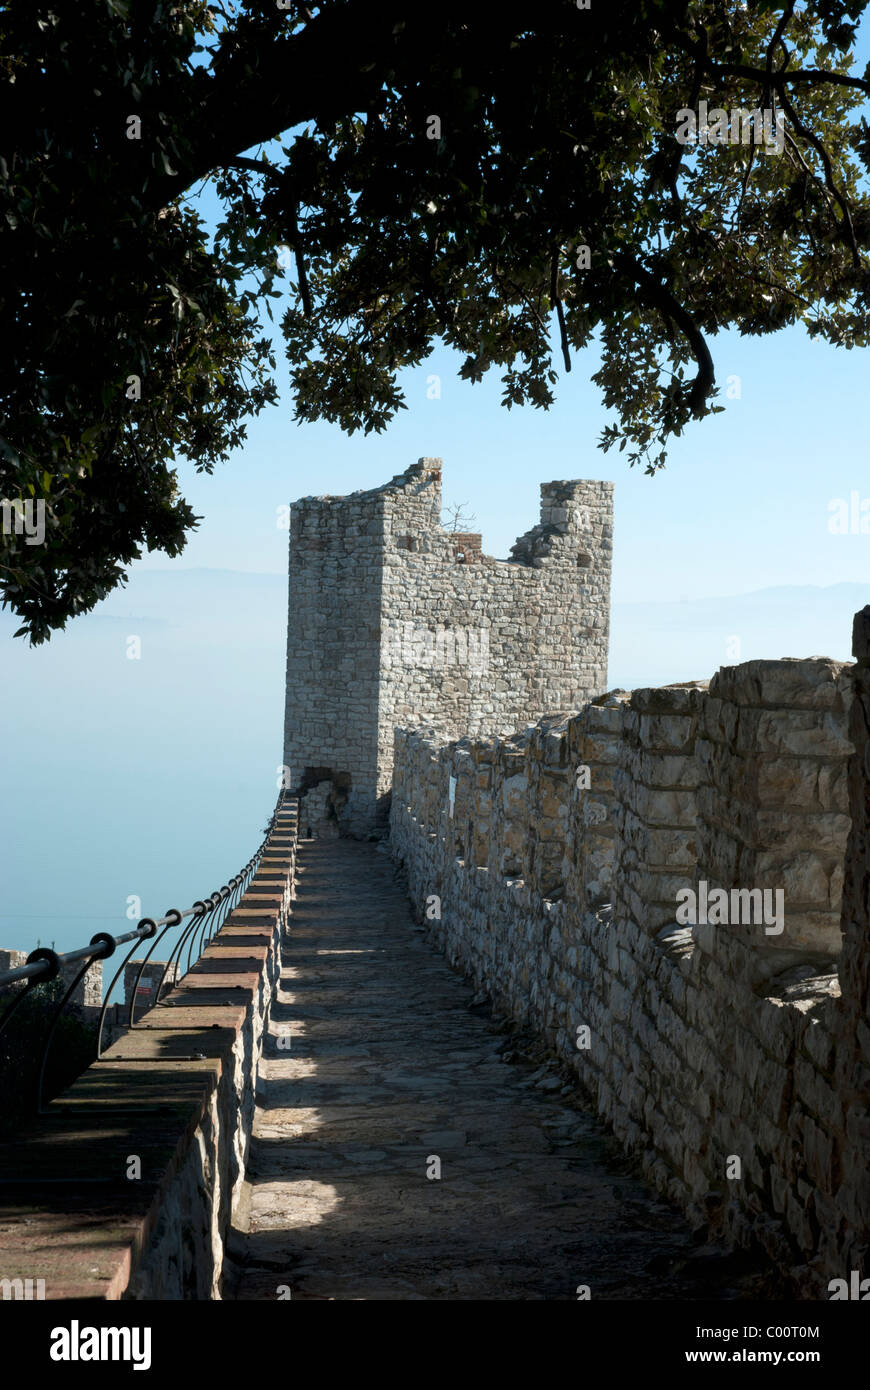 Castiglione del Lago sul lago Trasimeno - Castello medievale merlature - Umbria, Italia Foto Stock